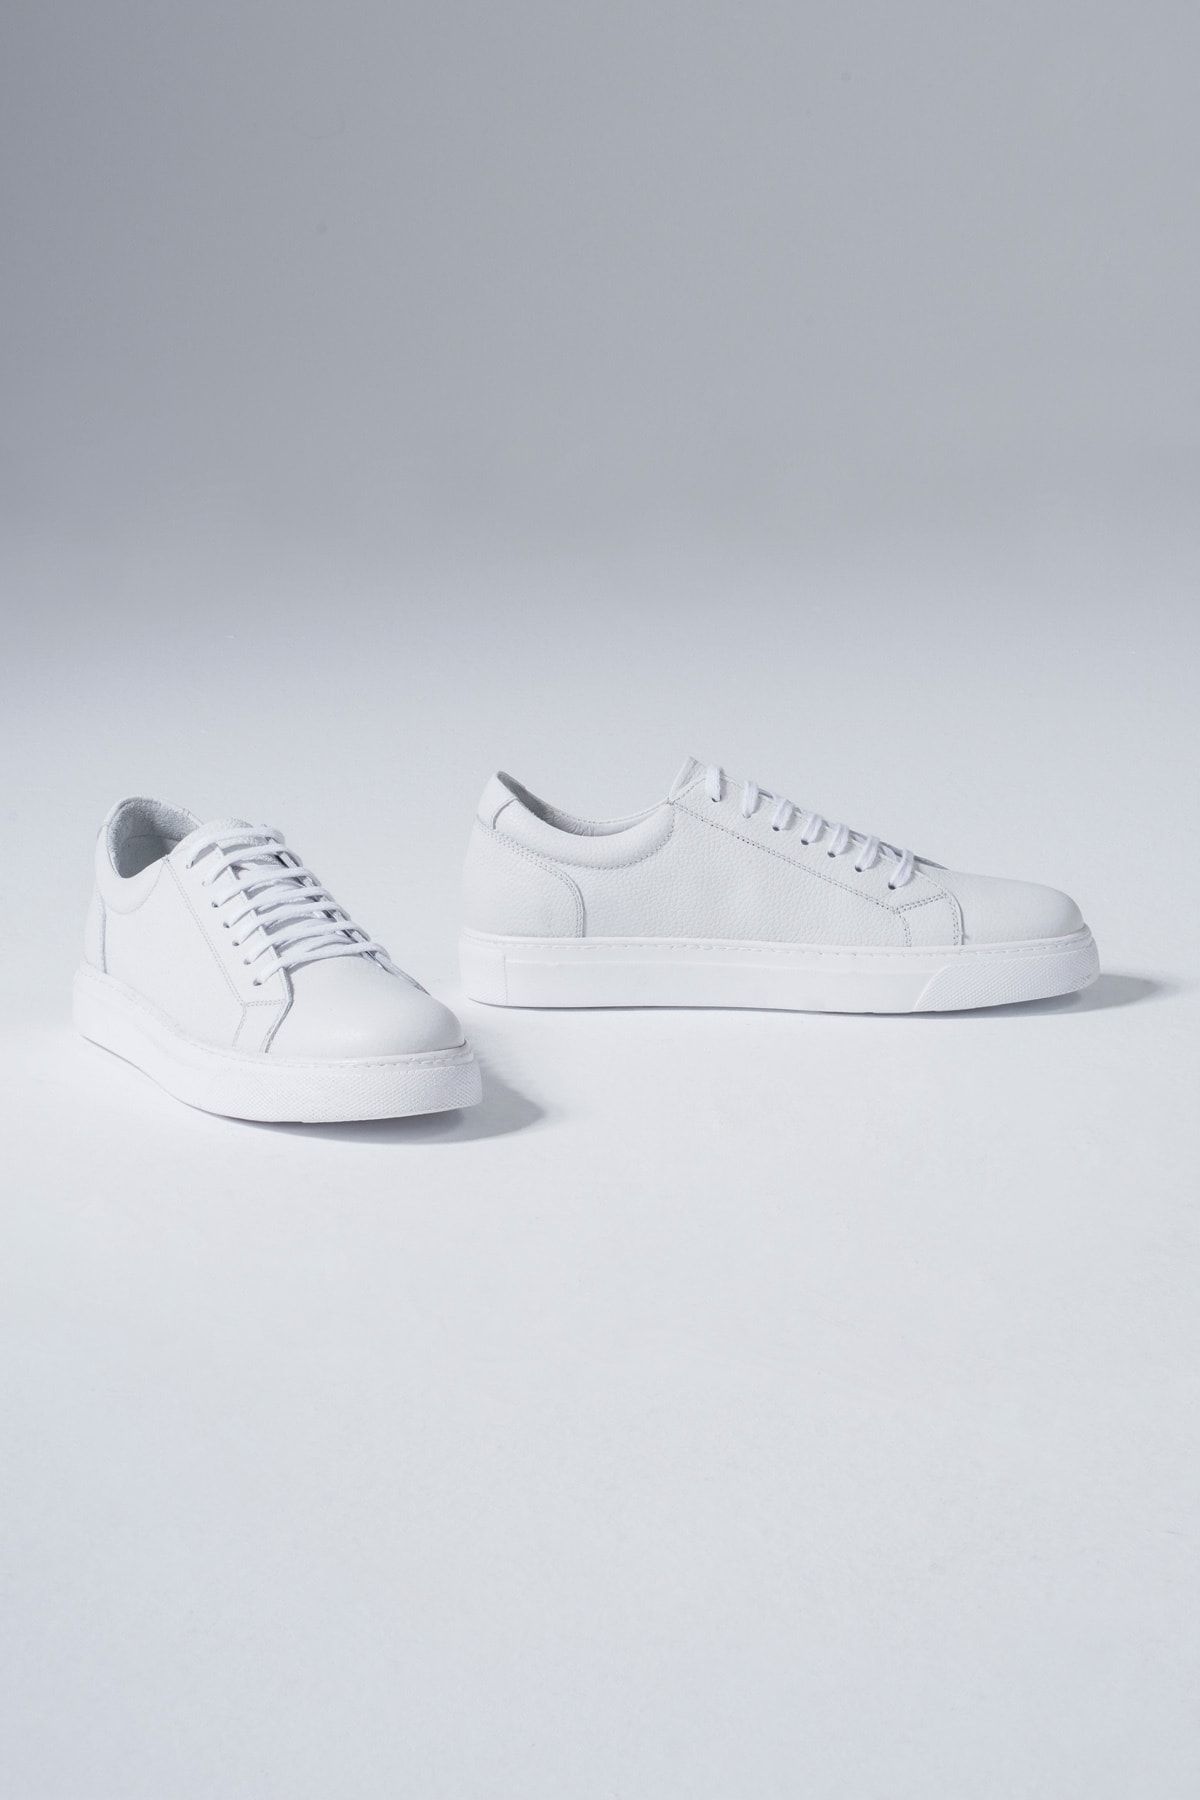 CZ London Hakiki Deri Erkek Beyaz Sneakers Spor Ayakkabı Ped Destekli Moda